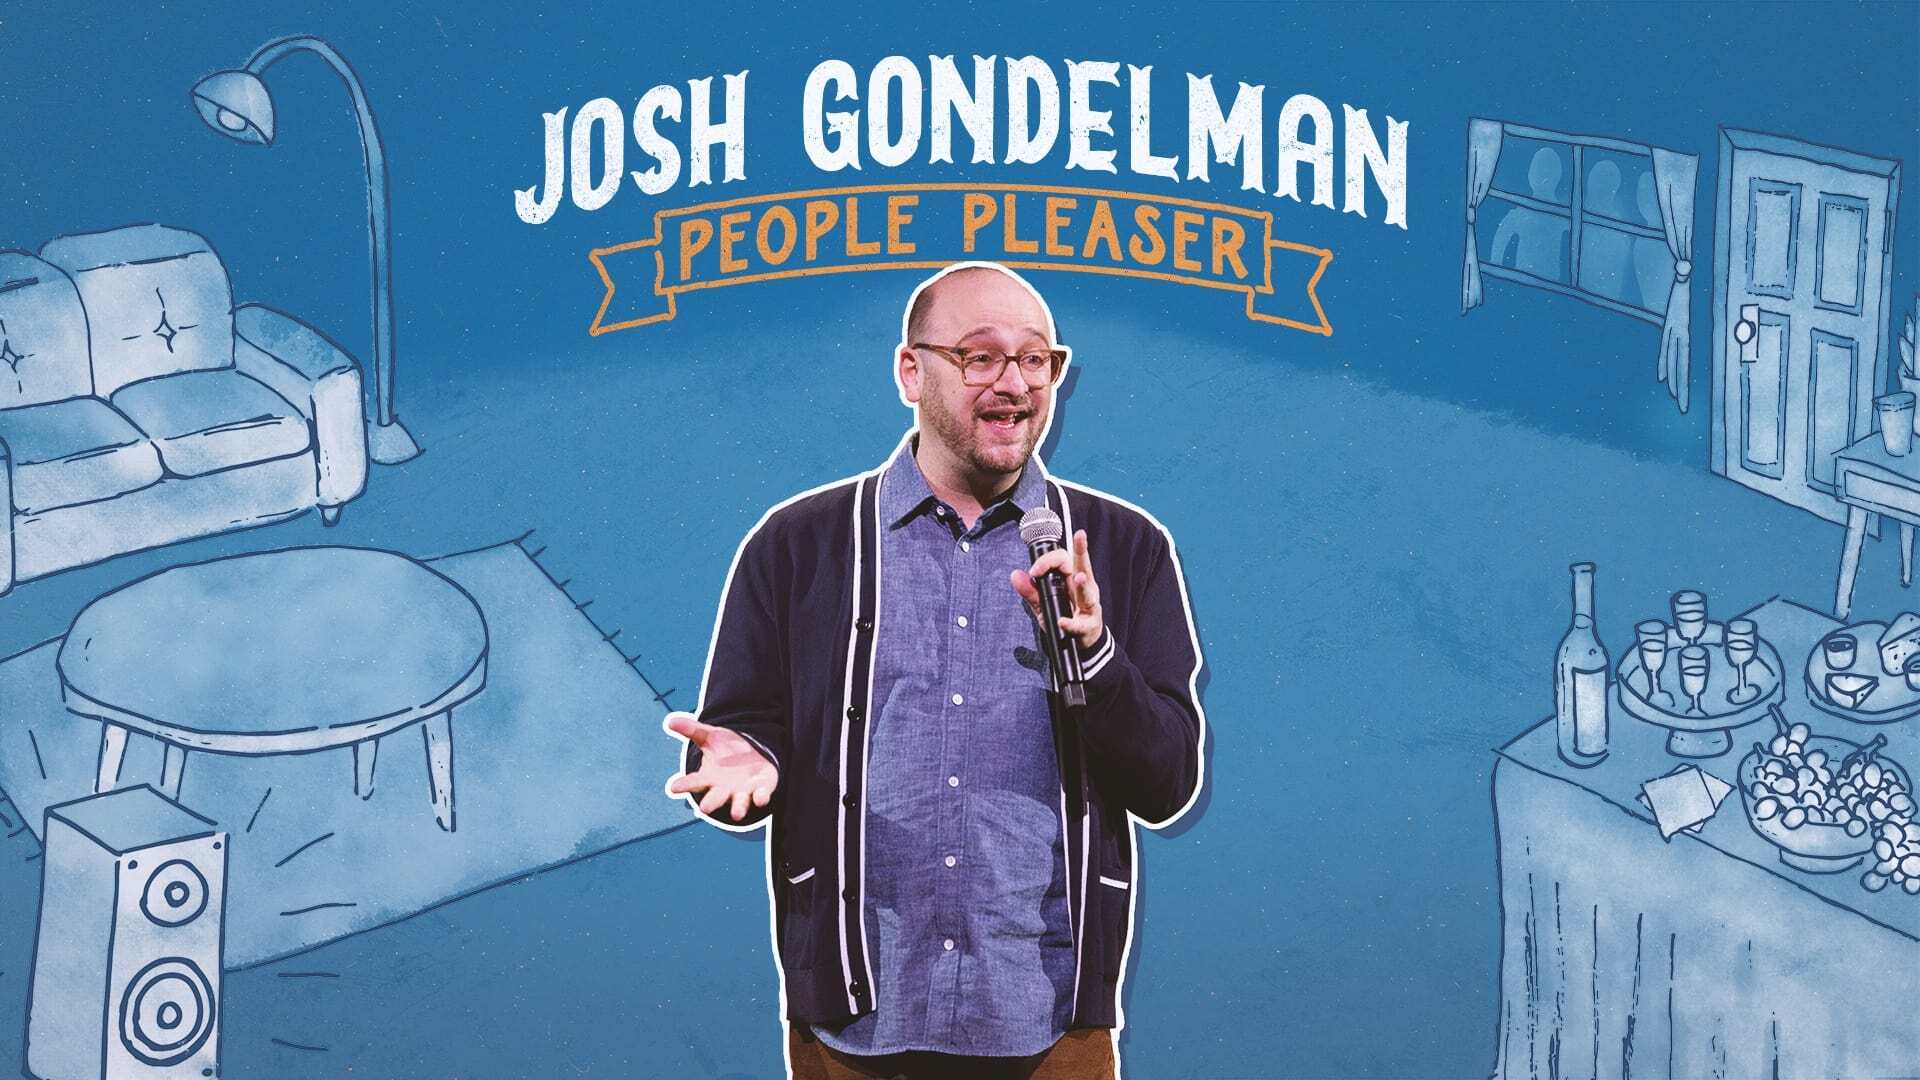 ჯოშ გონდელმანი: ხალხისთვის / Josh Gondelman: People Pleaser